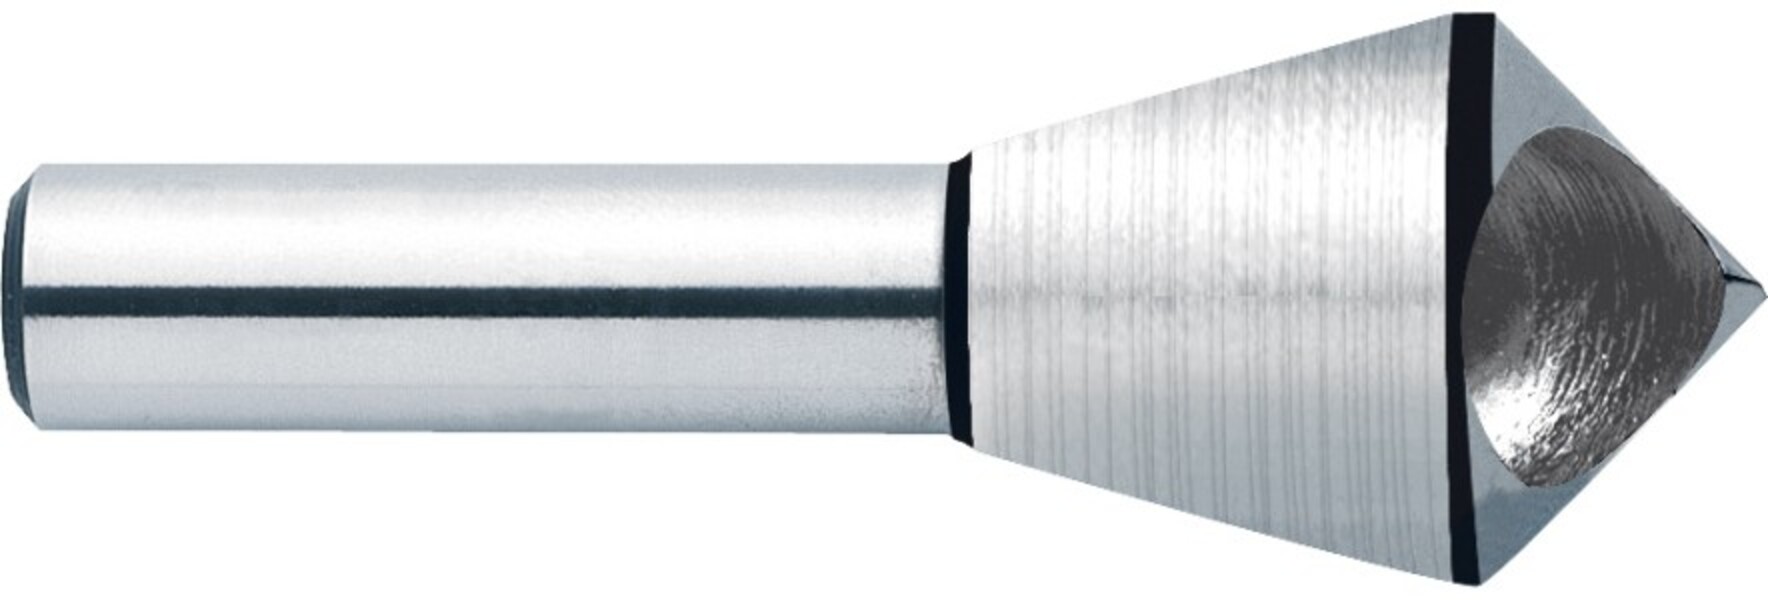 Зенковка коническая с поперечным отверстием, HSS, 90°, d 15-20 мм, цилиндрический хвостови